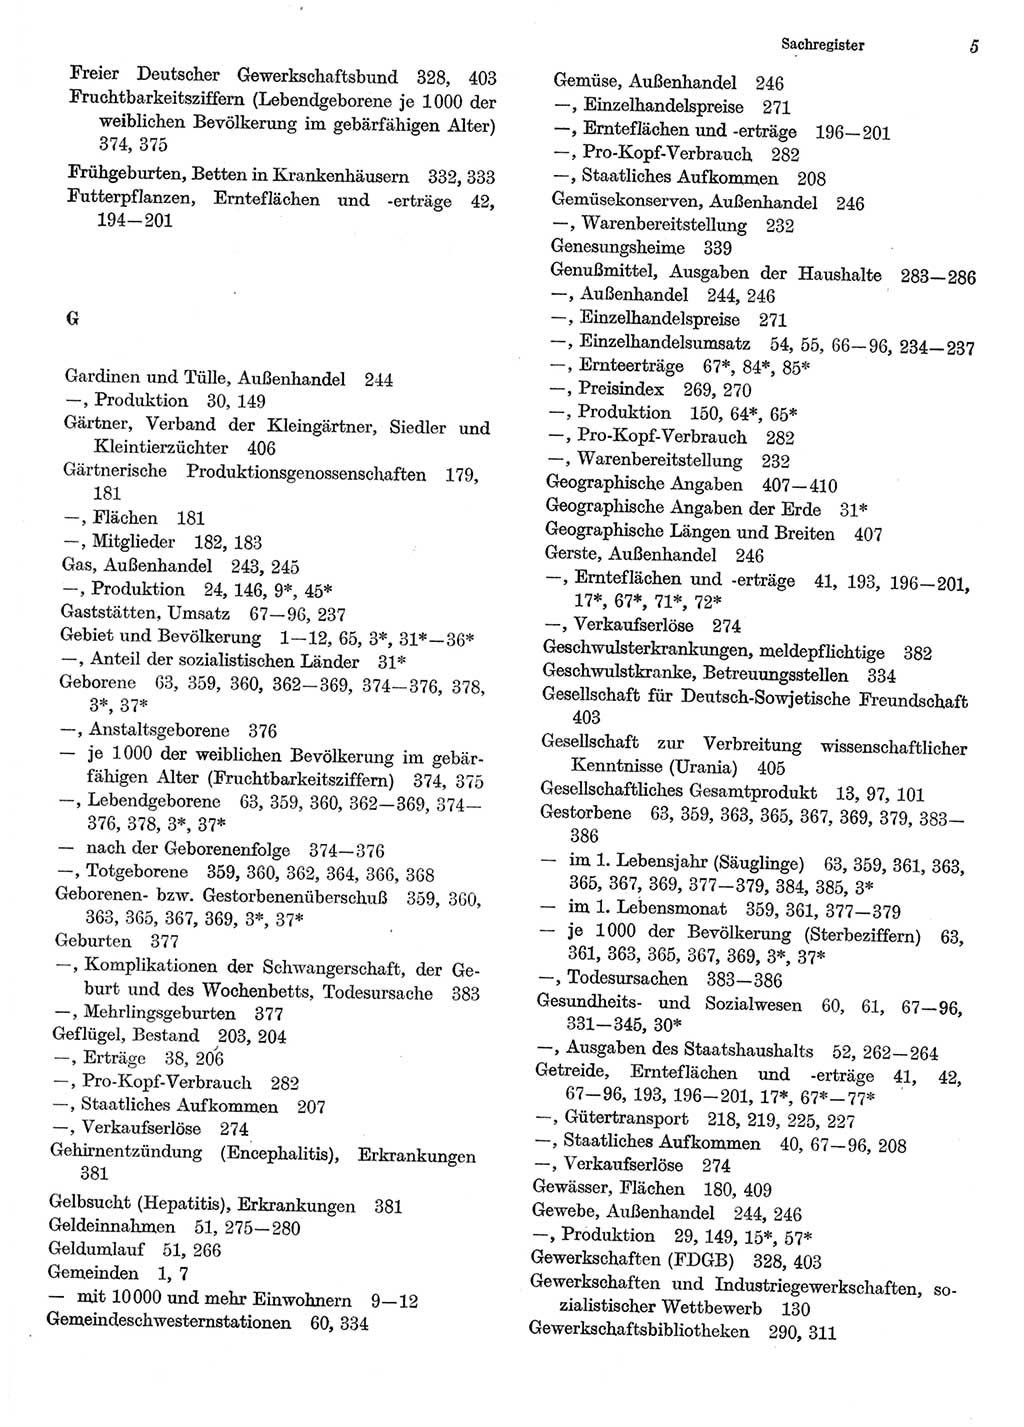 Statistisches Jahrbuch der Deutschen Demokratischen Republik (DDR) 1985, Seite 5 (Stat. Jb. DDR 1985, S. 5)